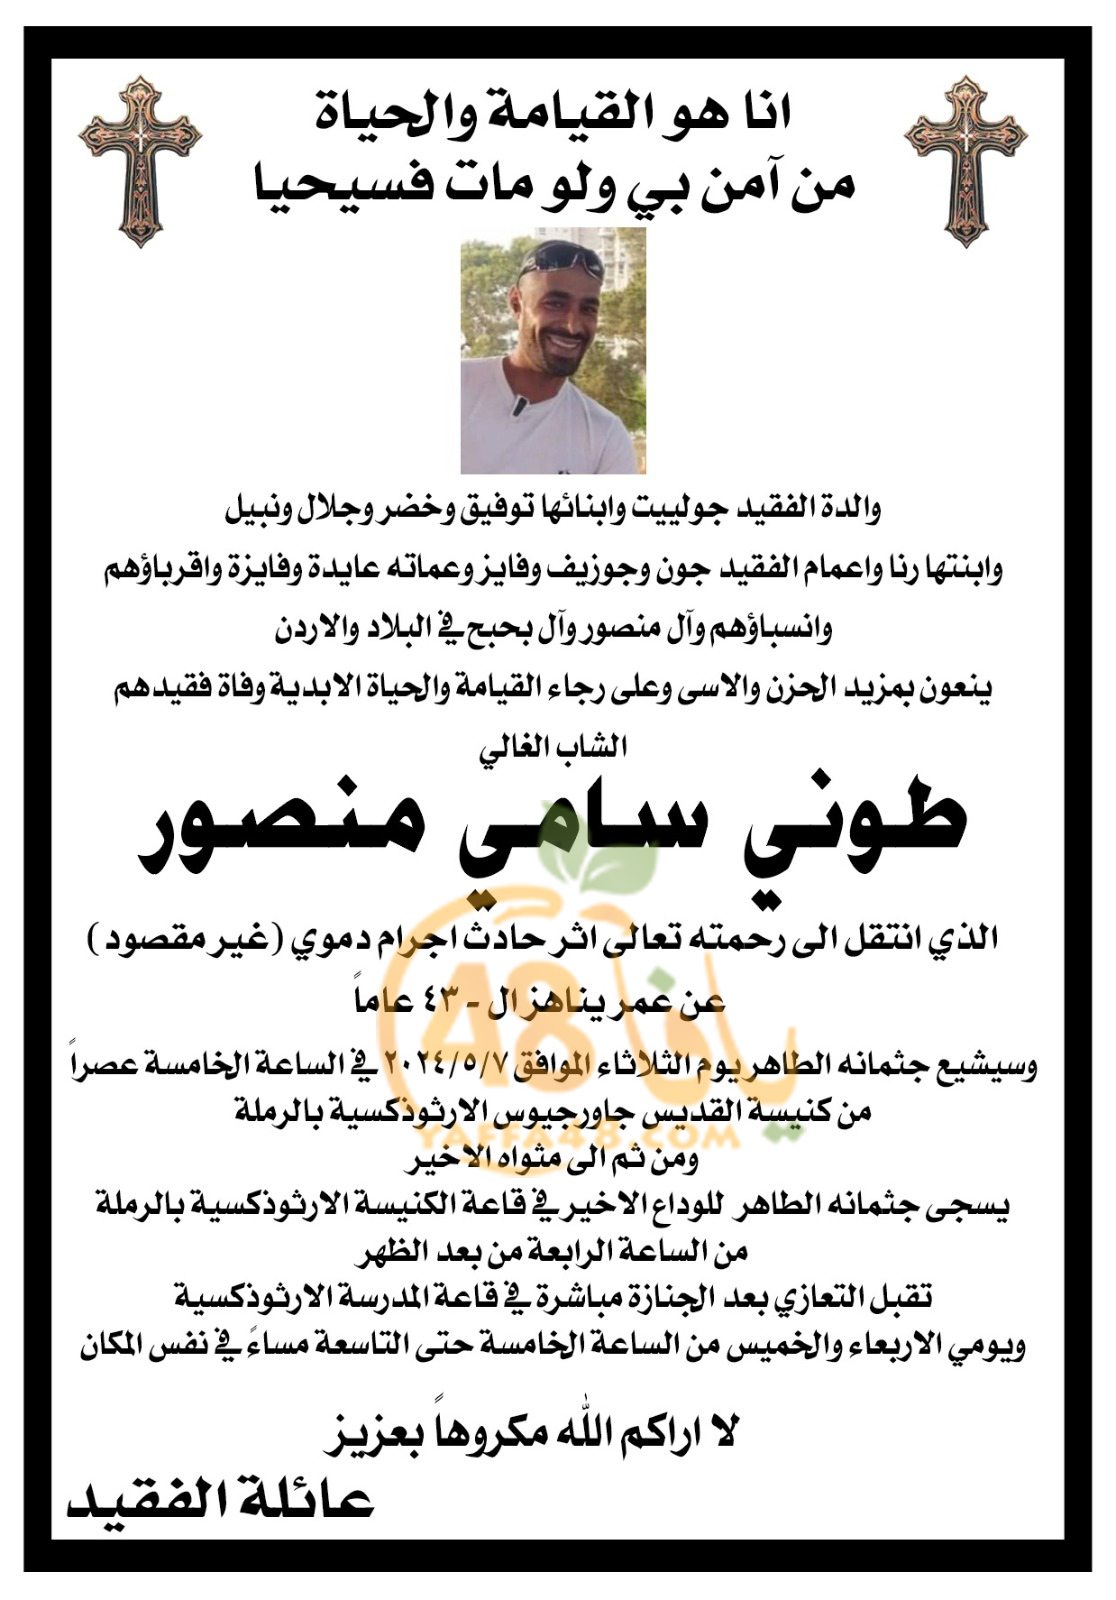 الرملة: الإعلان عن موعد تشييع جثمان طوني منصور ضحية اطلاق النار